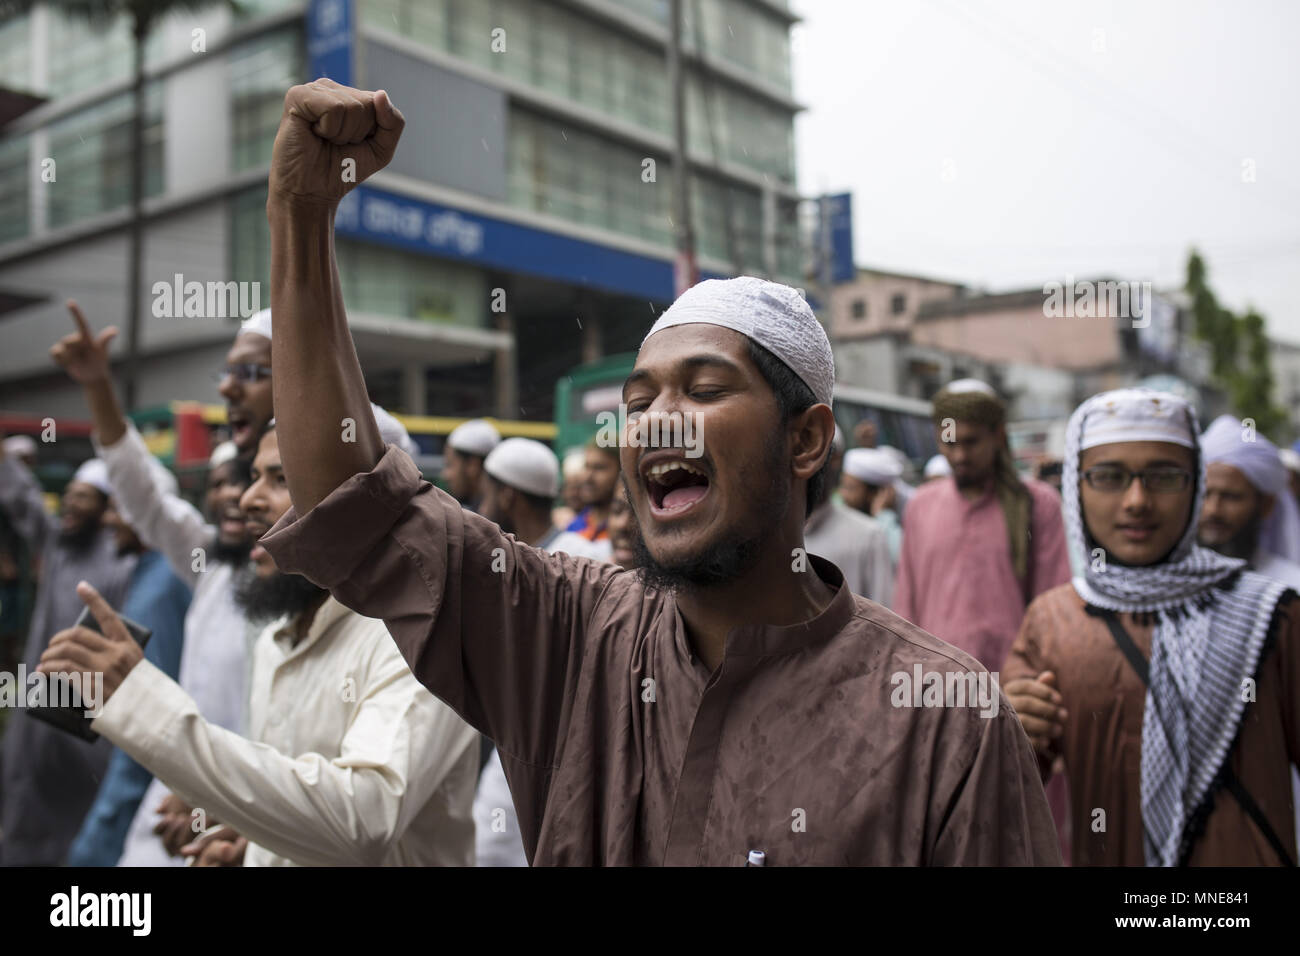 16 maggio 2018 - Dhaka, Bangladesh - Bangladesh gruppo islamista fatta dimostrazione contro Israele arbitrario del massacro di Plastine musulmani e ha avuto luogo ambasciata degli Stati Uniti a Jarujalame a Dhaka , Bangladesh. (Credito Immagine: © Zakir Hossain Chowdhury via ZUMA filo) Foto Stock